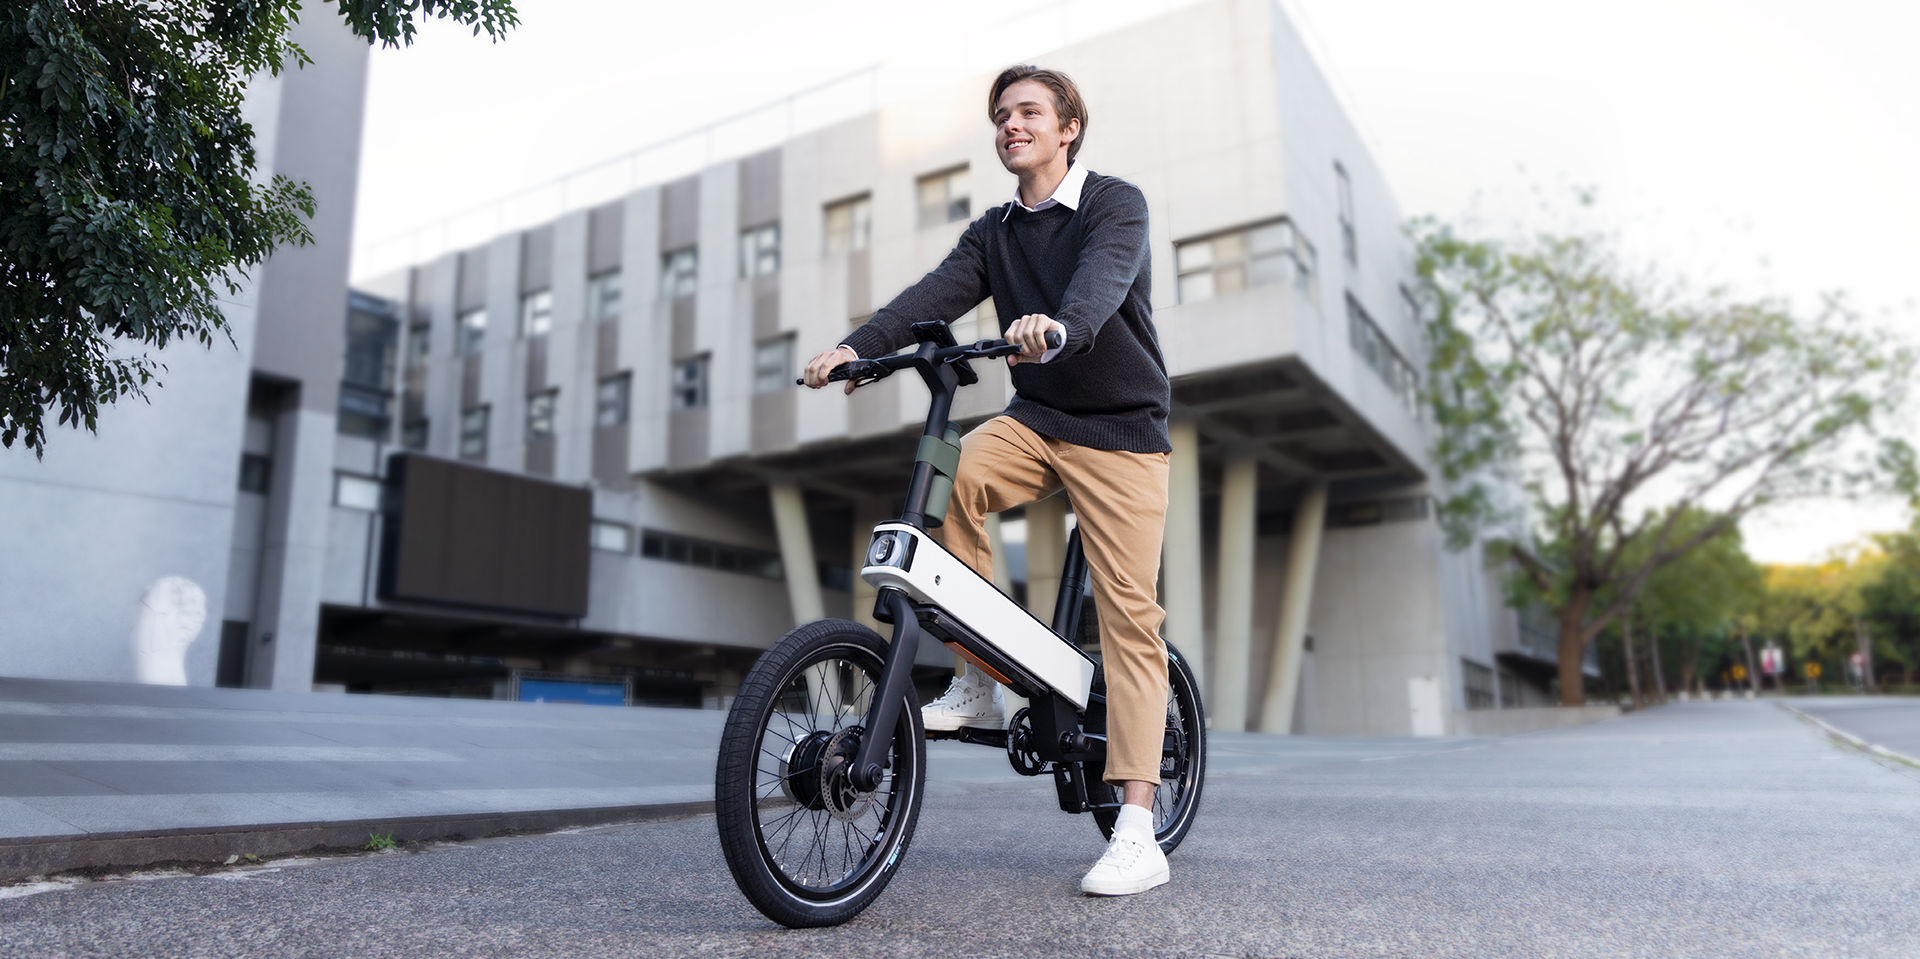 Acer ebii: una bicicleta eléctrica con inteligencia artificial para una conducción segura